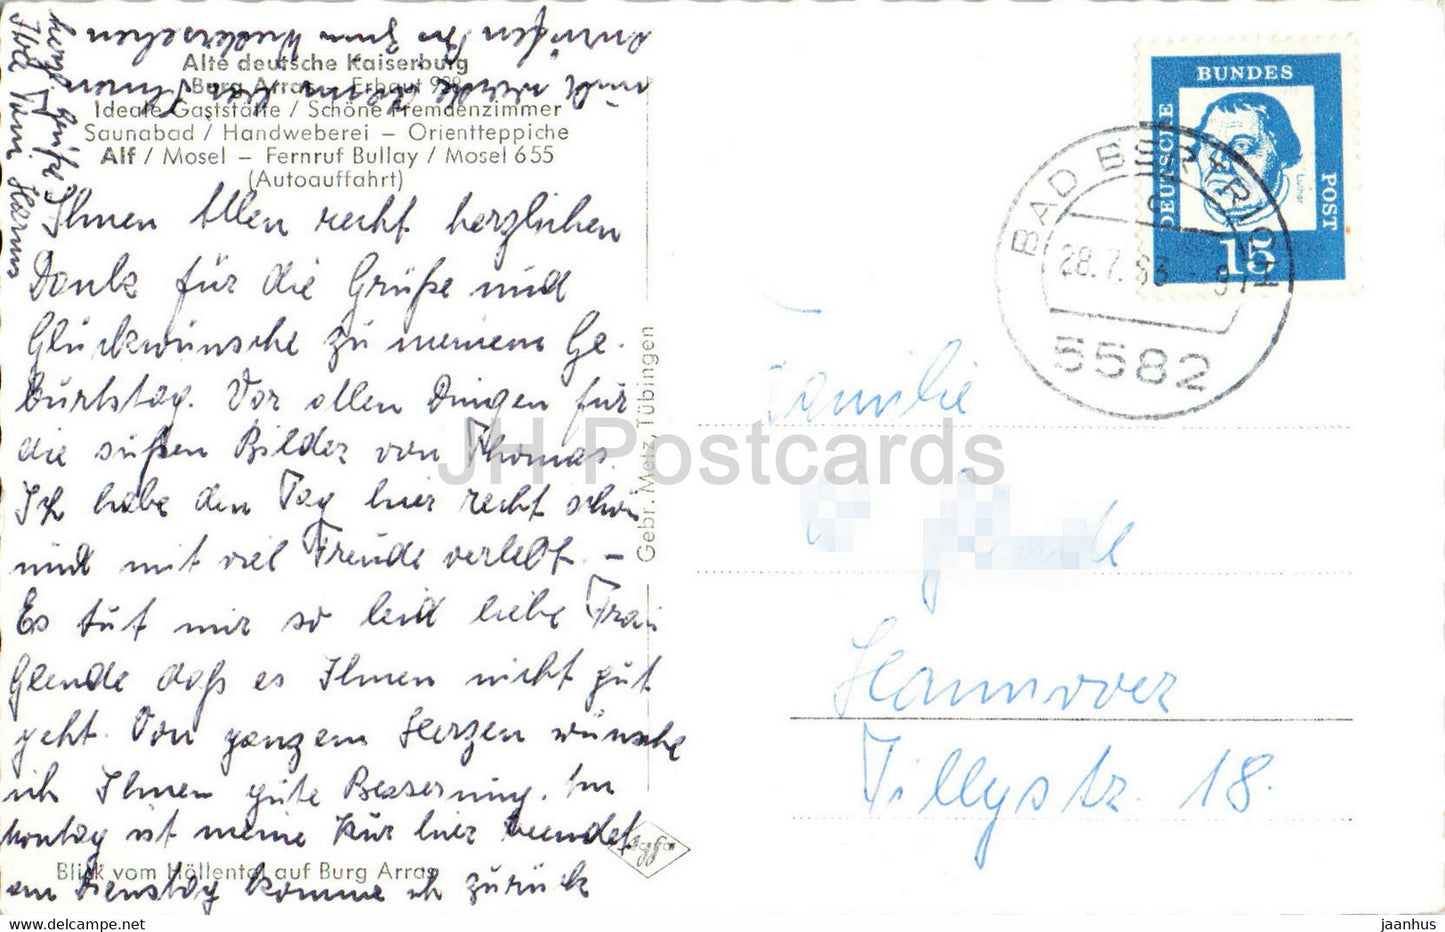 Alte Deutsche Kaiserburg - Burg Arras - alte Postkarte - 1963 - Deutschland - gebraucht